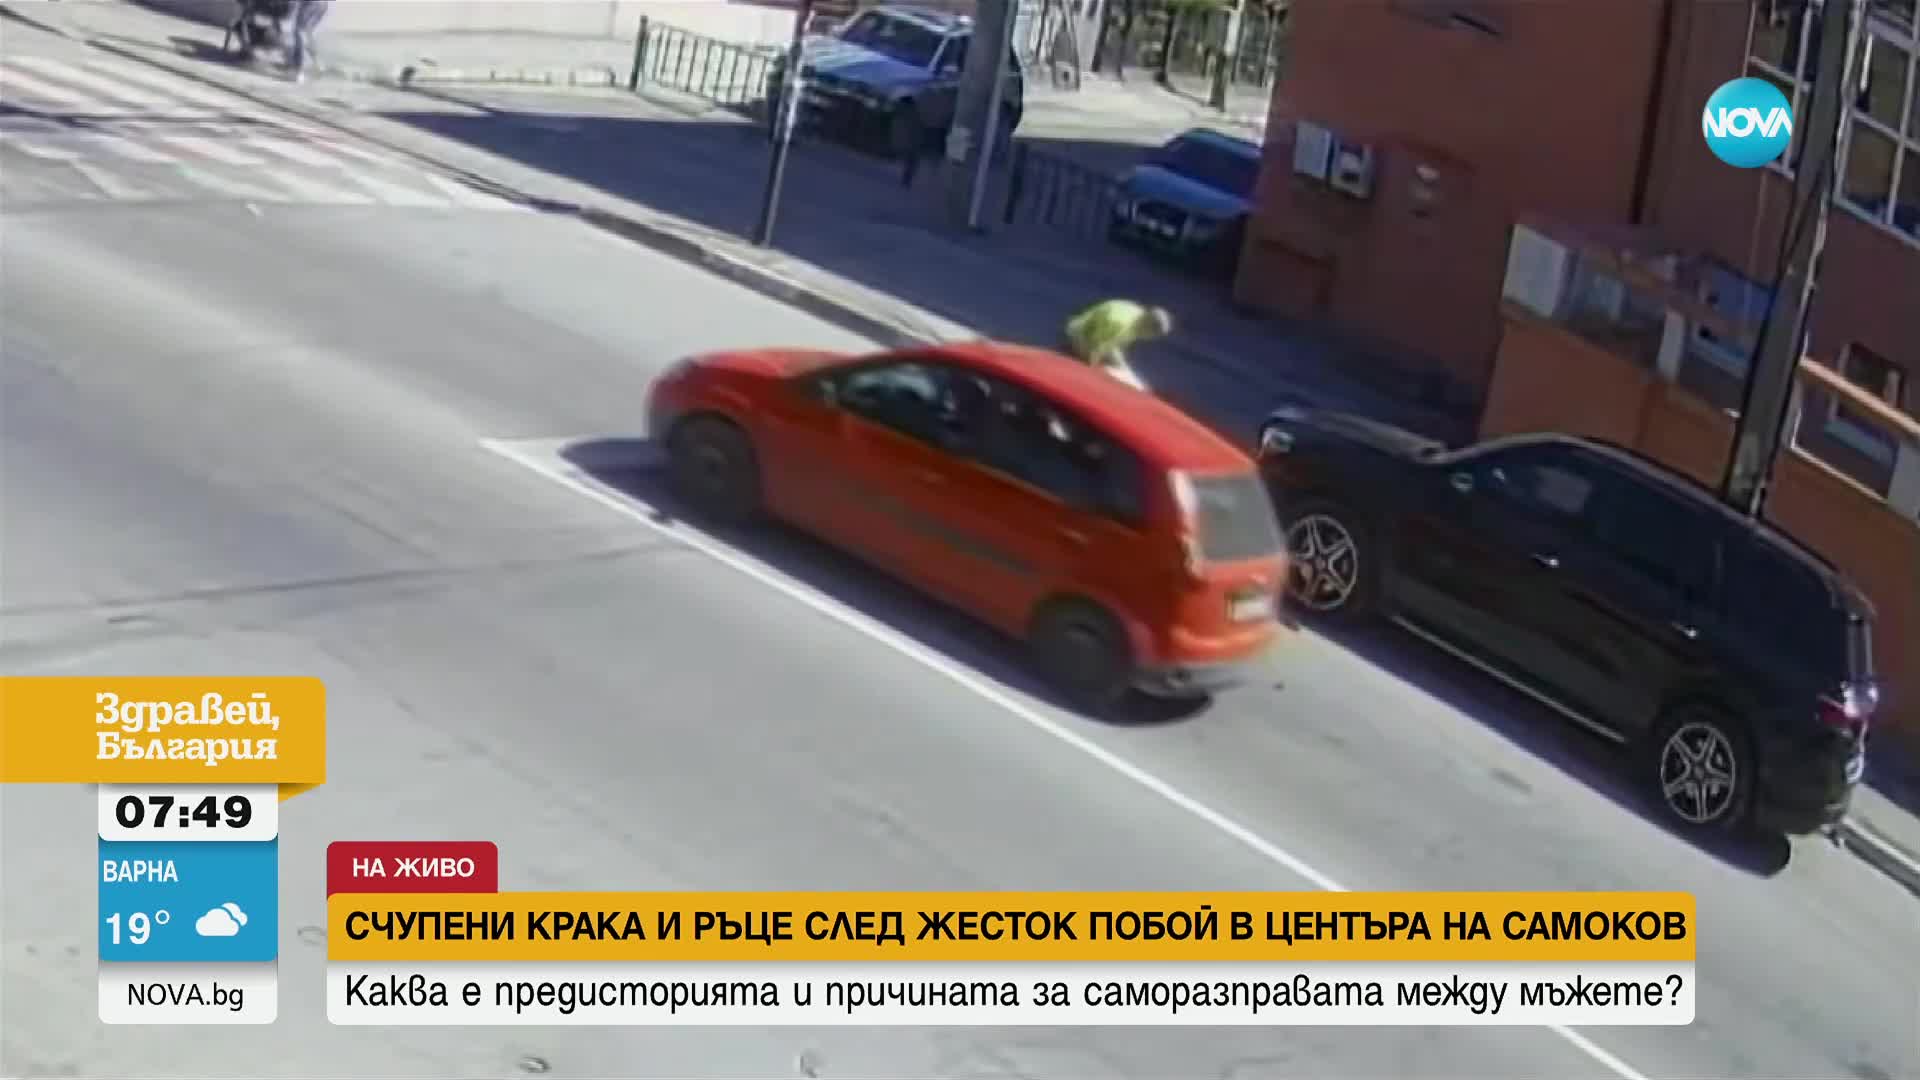 Мъж е със счупени крака и ръце след побой в центъра на Самоков